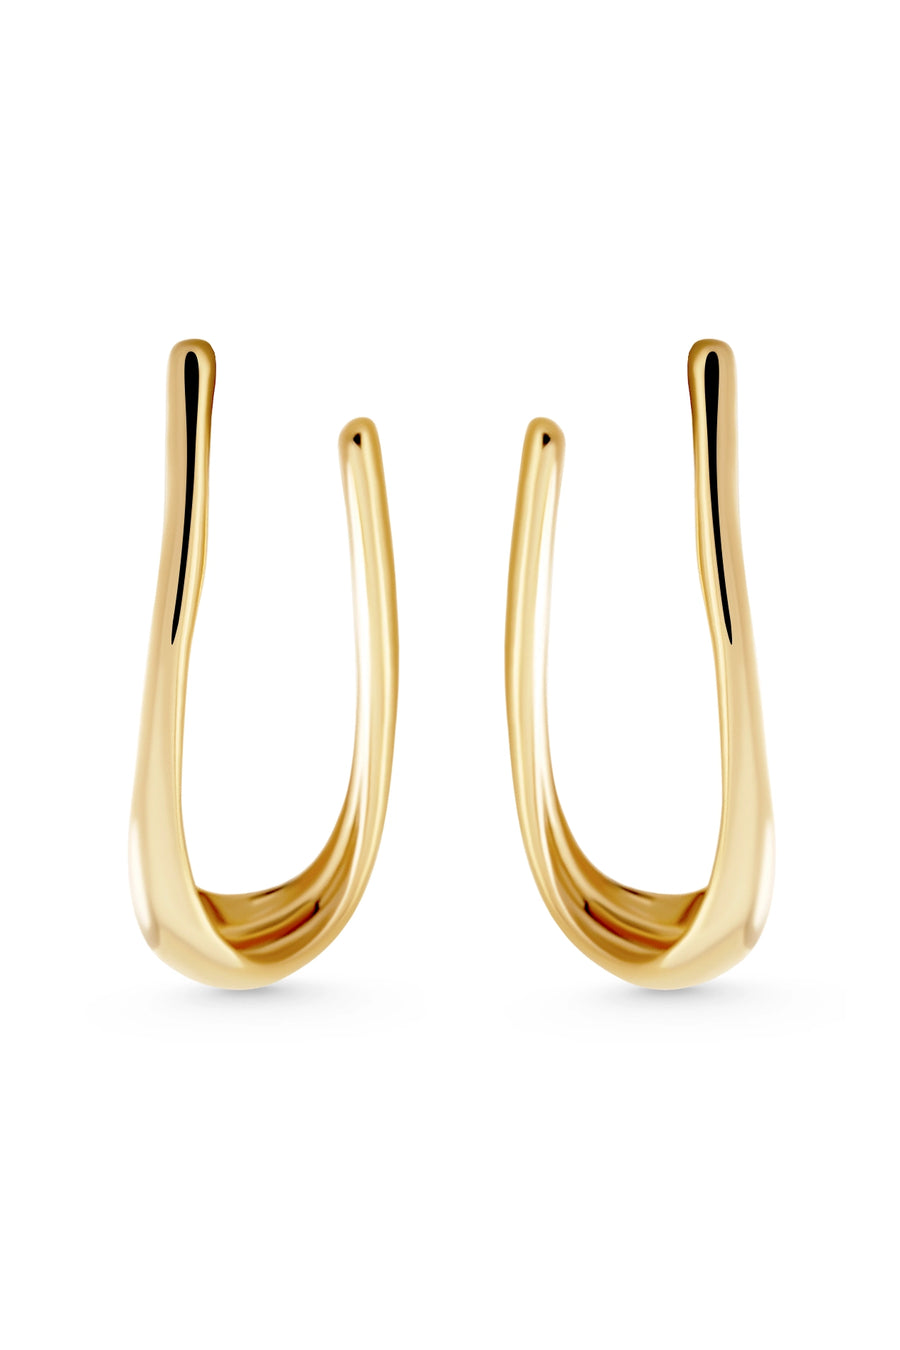 ATARAXIA Earrings. Elongated elliptical hoops, 18K gold vermeil, handmade, hypoallergenic, water-resistant